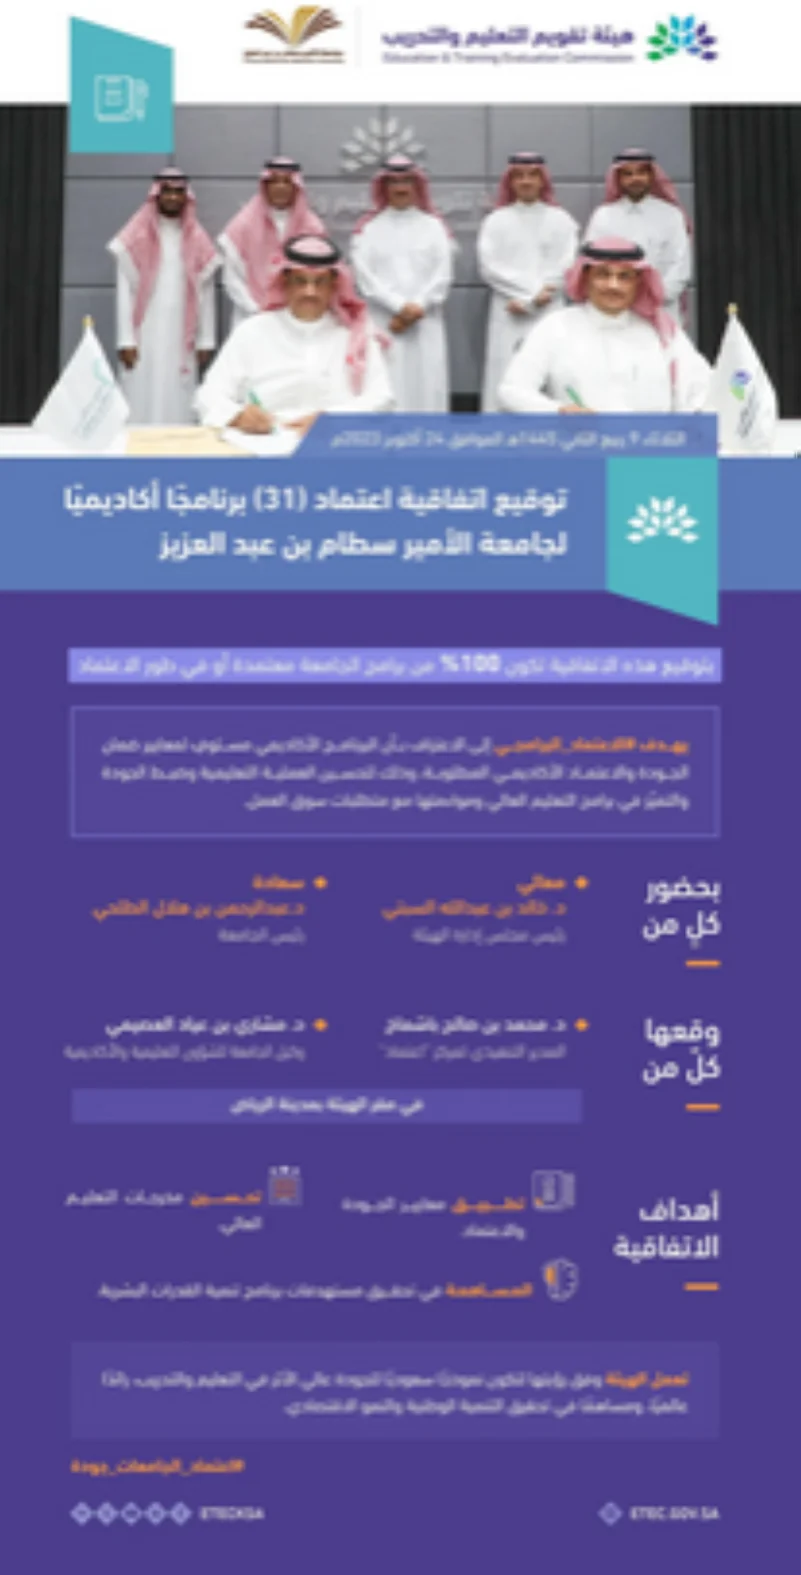 "تقويم التعليم" توقع اتفاقية اعتماد 31 برنامجًا أكاديميًا لجامعة الأمير سطام بن عبدالعزيز